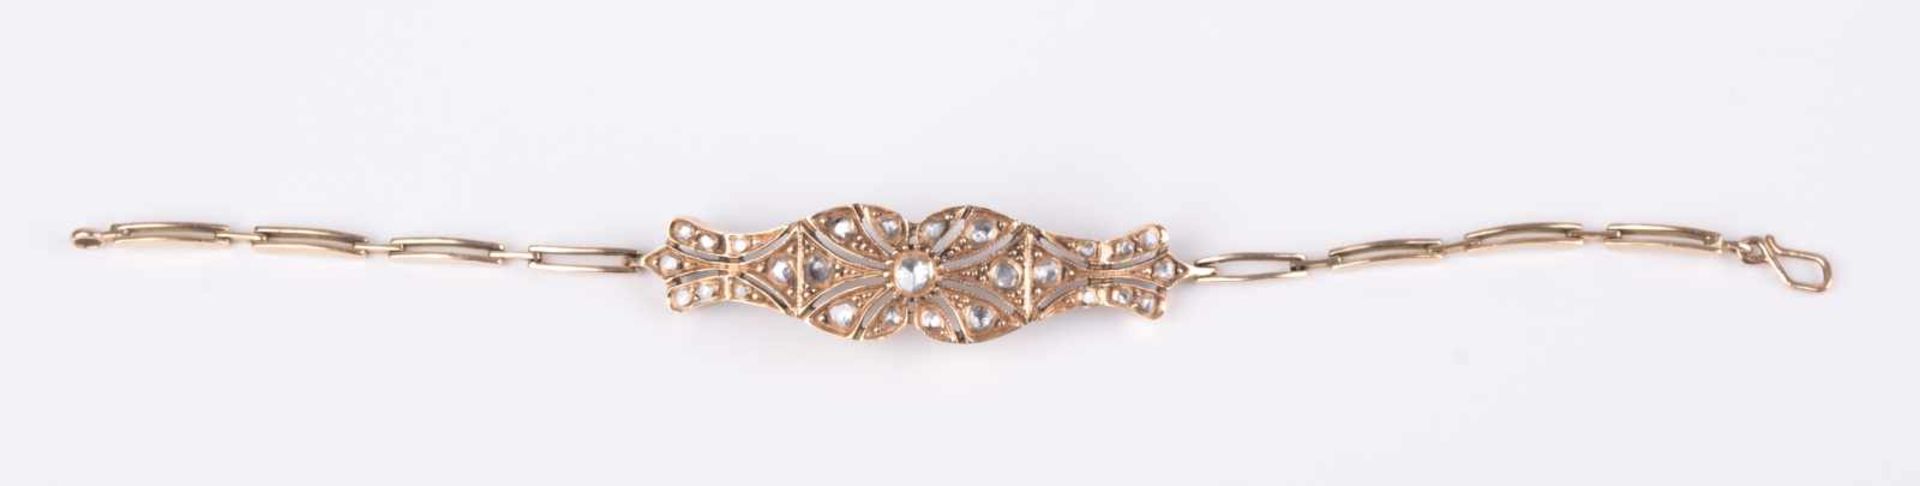 Diamantarmband Türkei um 1900 / diamond bracelet, Turkey about 1900 GG 585/000 geprüft, besetzt - Bild 3 aus 8